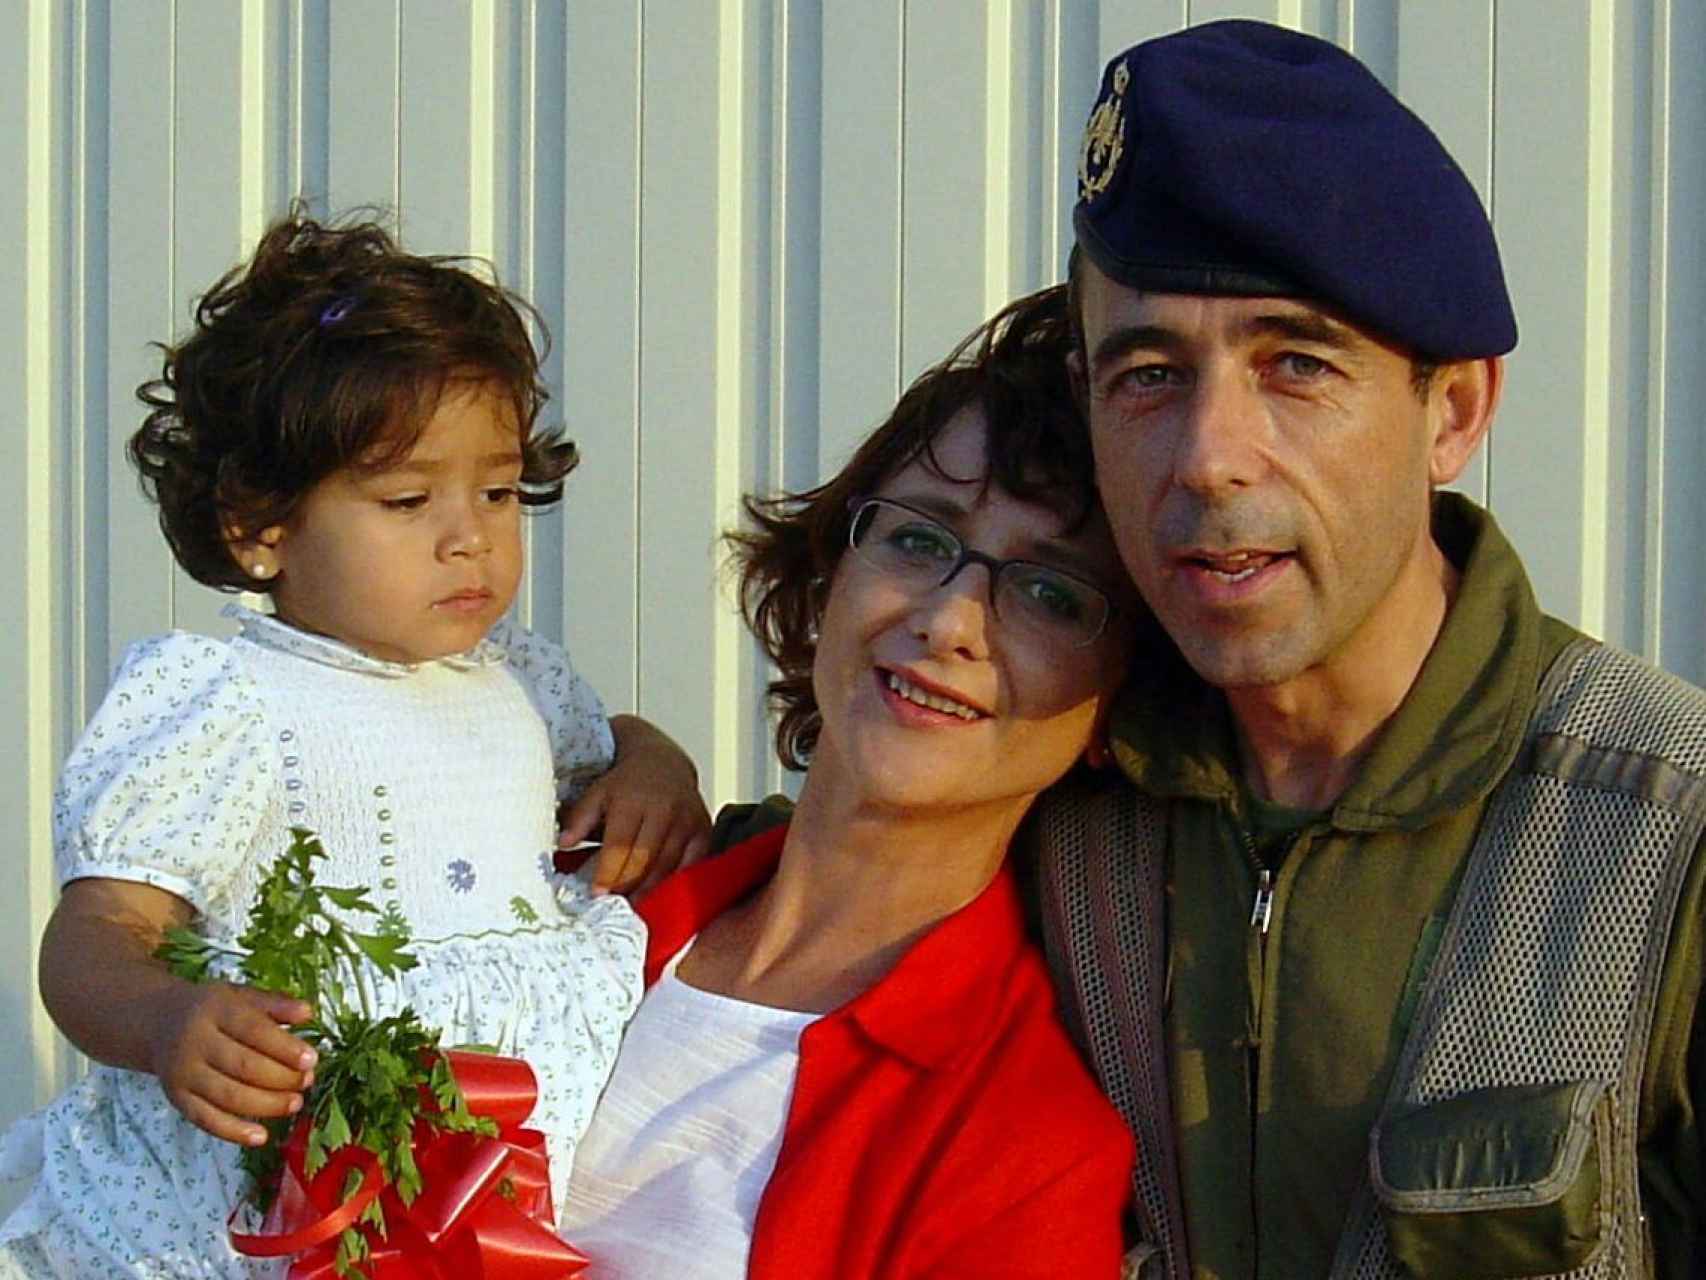 Vicente León Zafra con su mujer y su hija, tras volver de la operación. Se dejó el móvil encendido y ella escuchó prácticamente todo. ¡Casi me mata!.